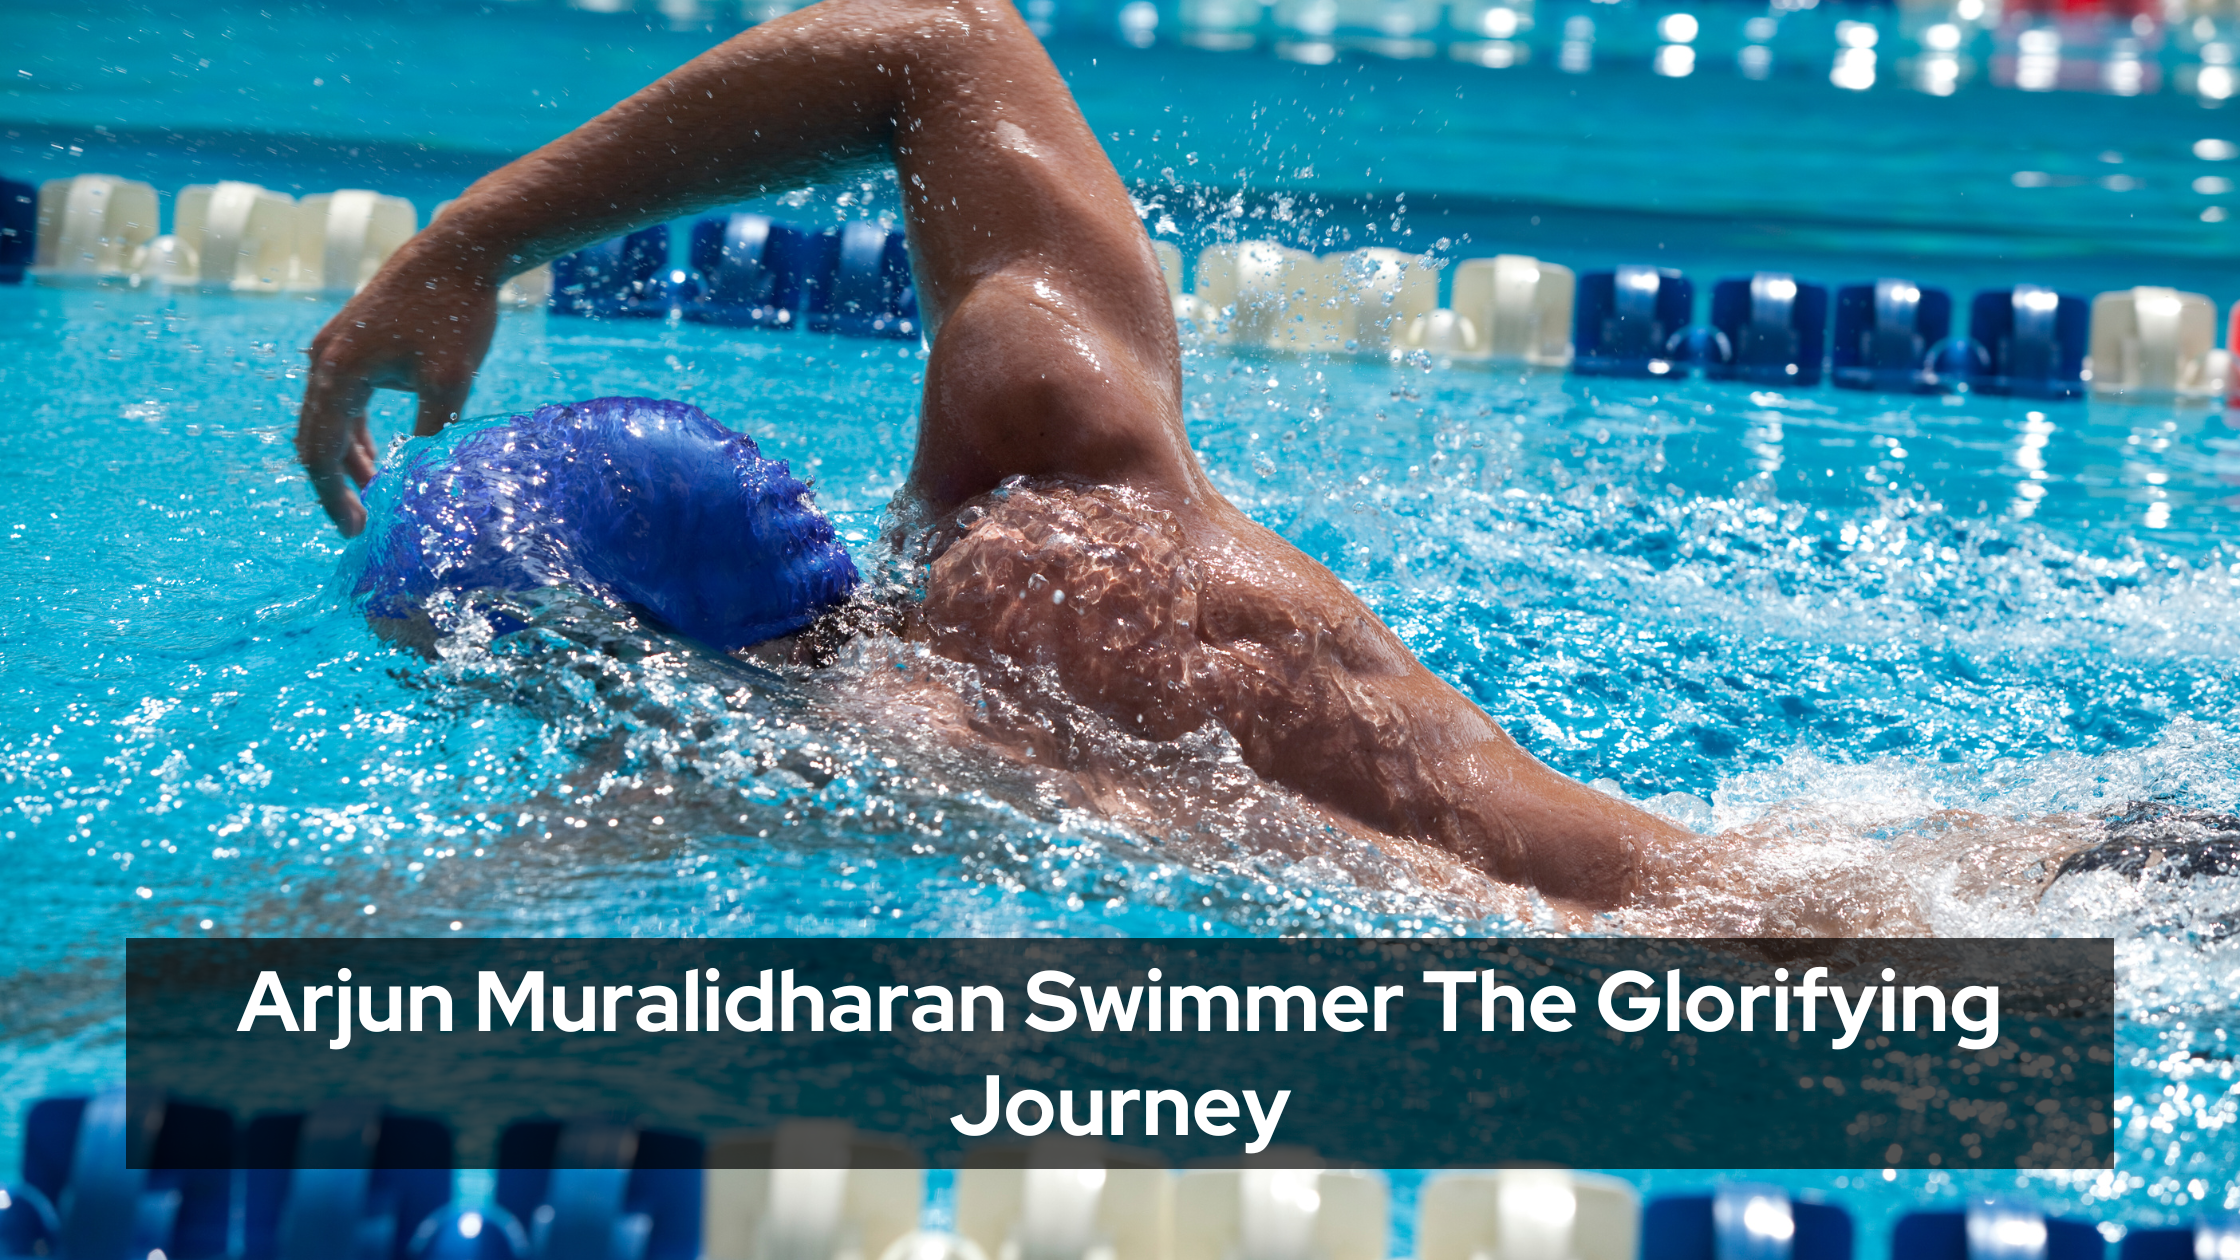 Arjun Muralidharan Swimmer The Glorifying Journey